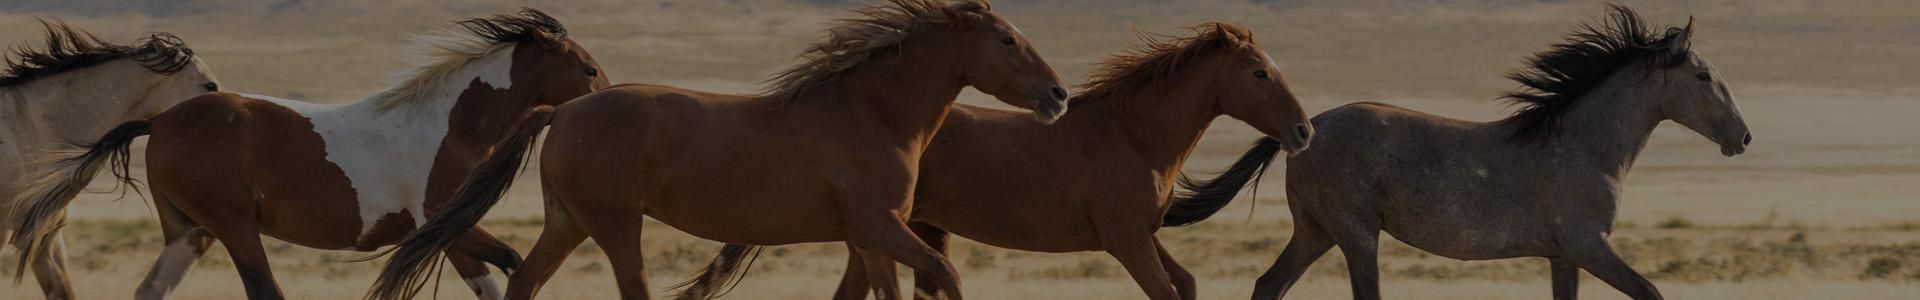 biegnące konie - banner